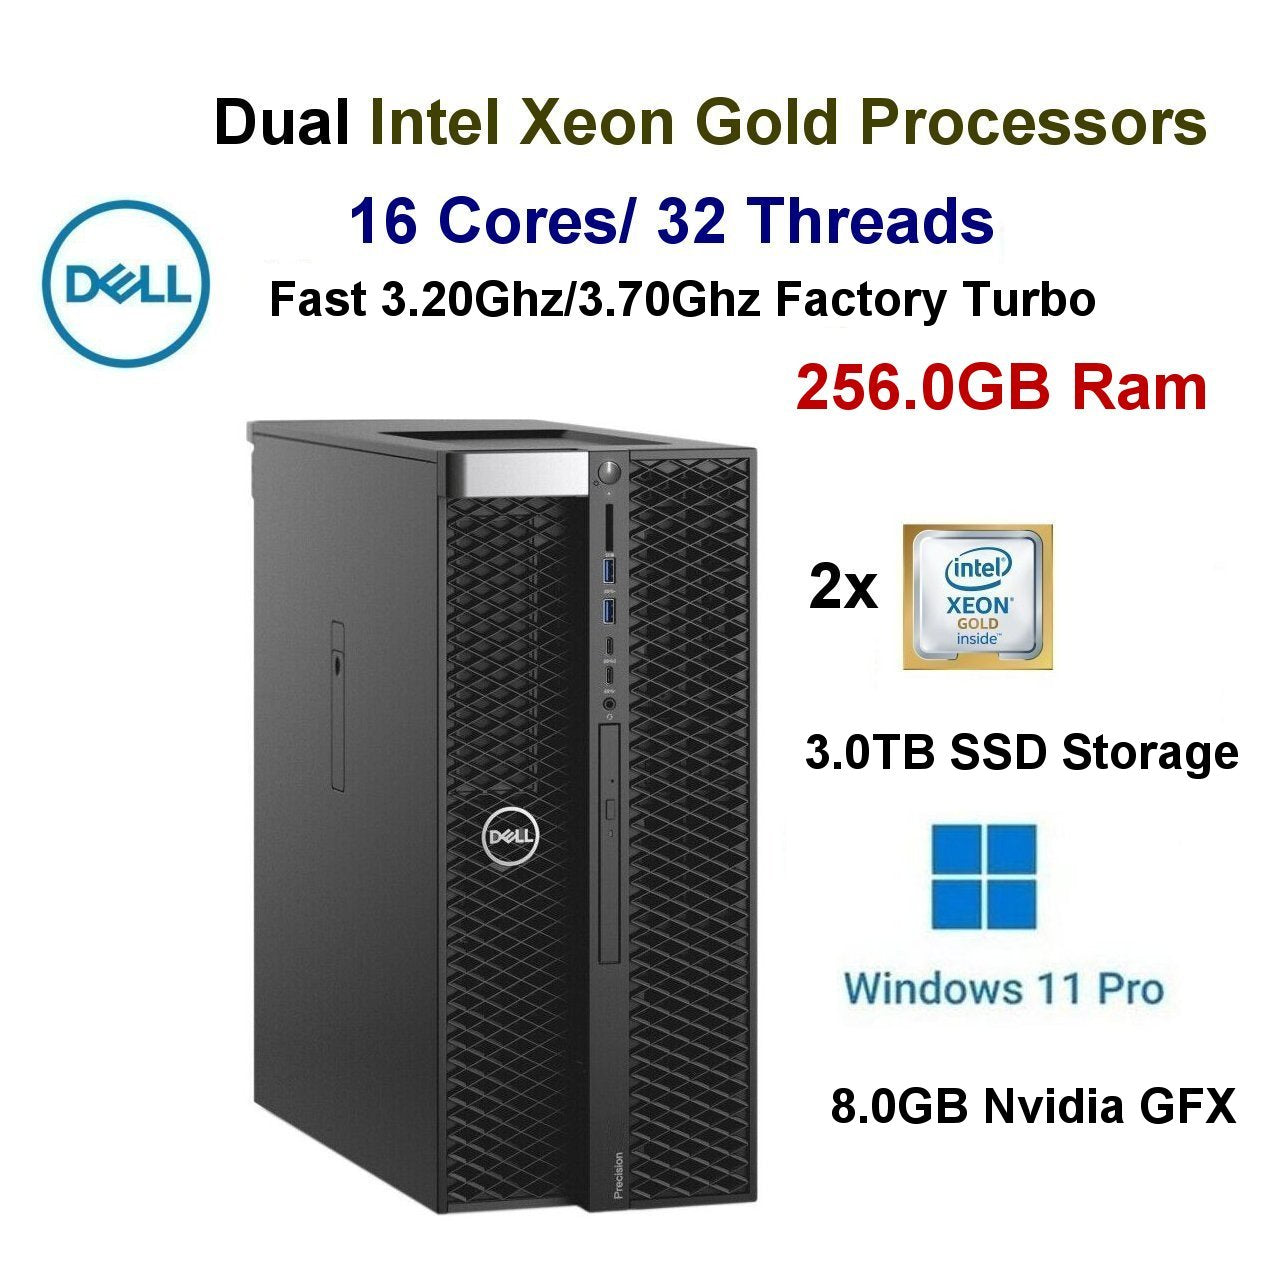 16 Cores 2x 3.20Ghz-3.70Ghz 2xIntel Gold Dell Precision 7820 Workstation PC 256GB 3.0TB SSD 8.0GB Nvidia GFX Win11